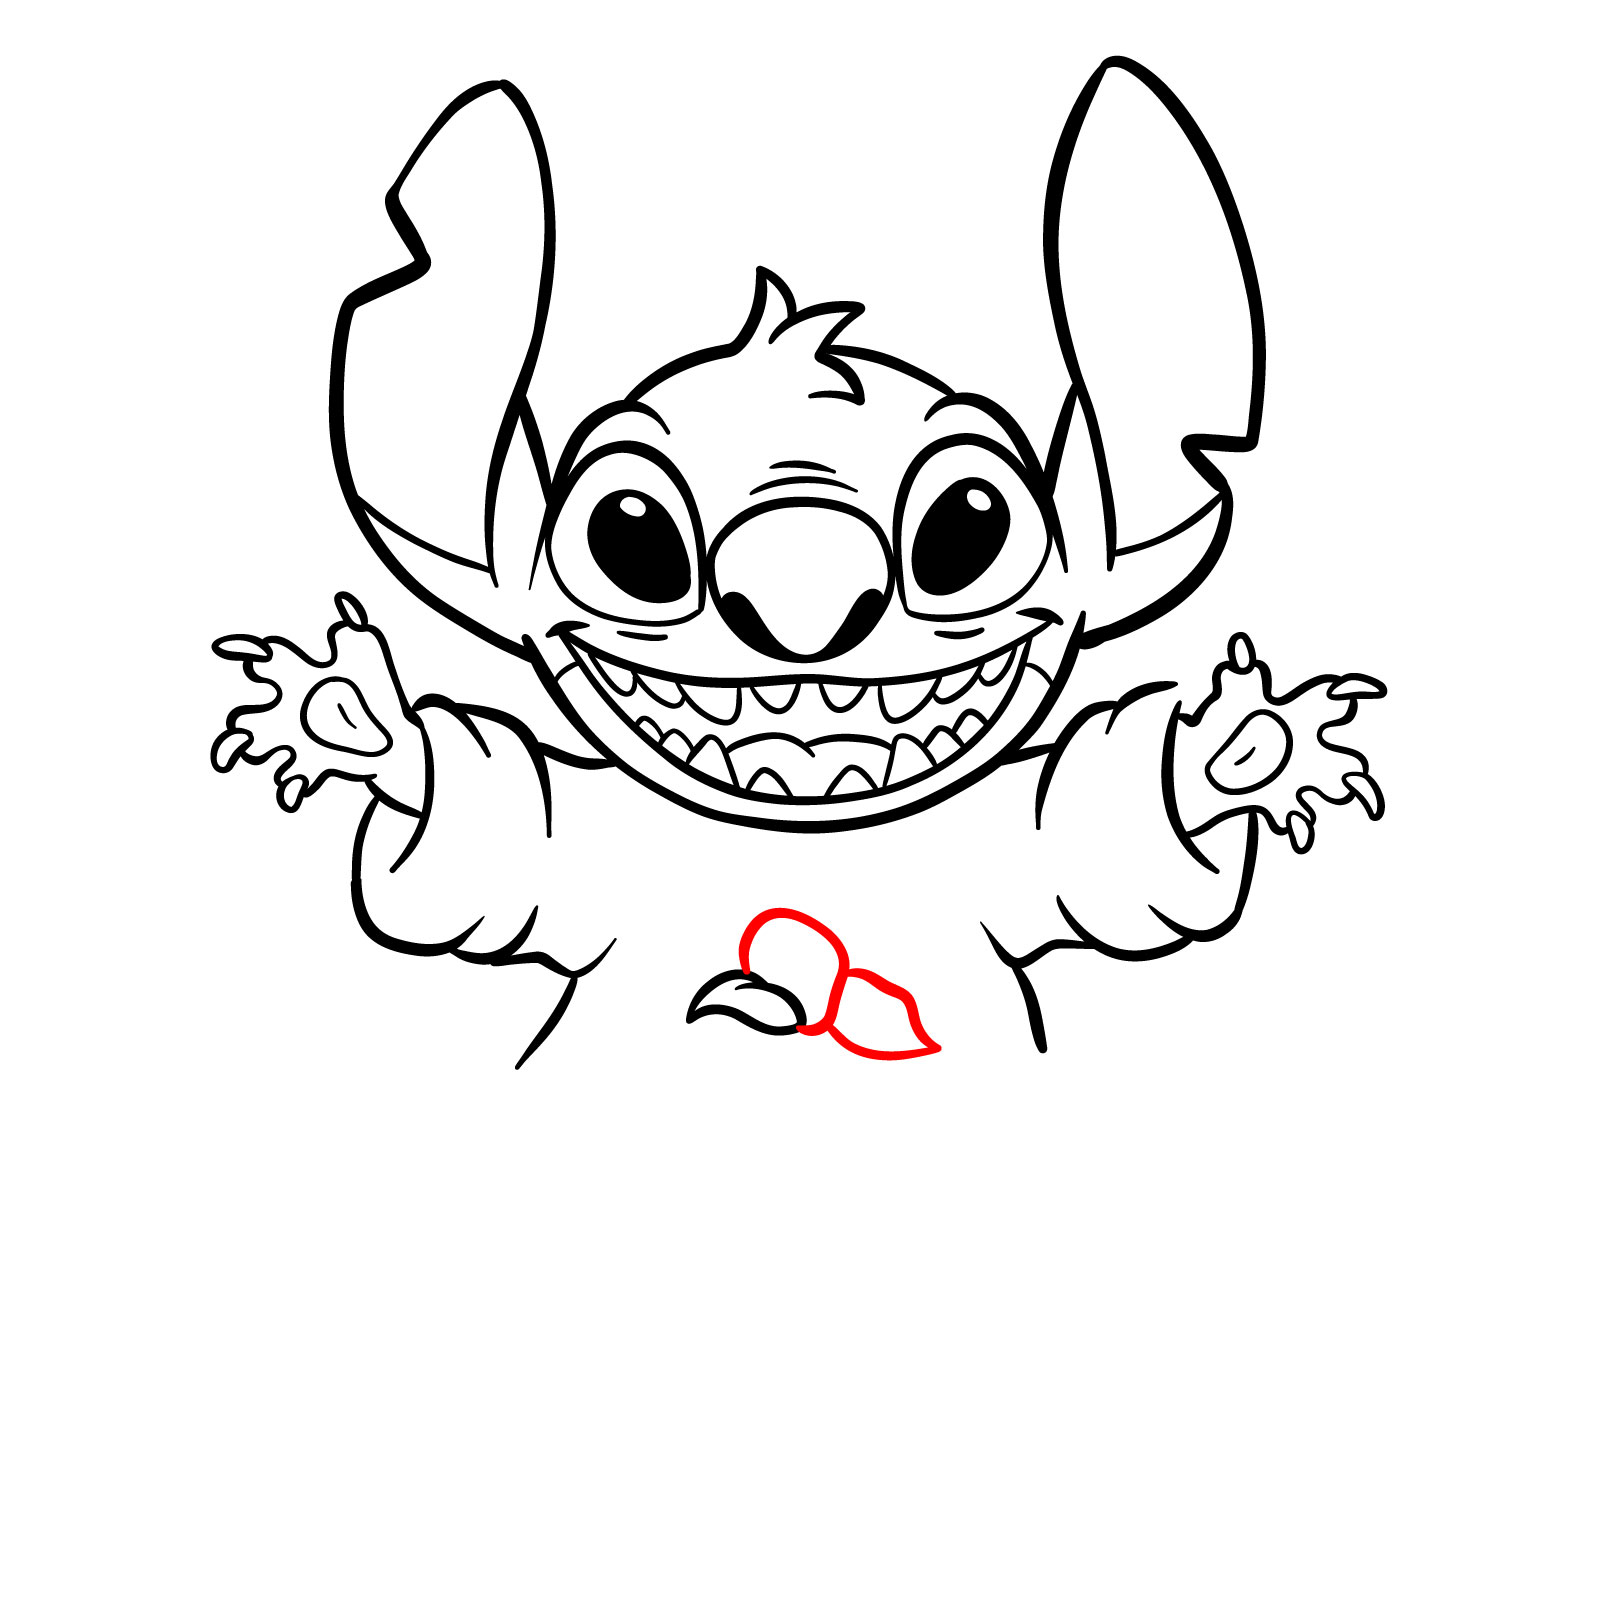 How to Draw Halloween Stitch with a jack-o'-lantern - step 22